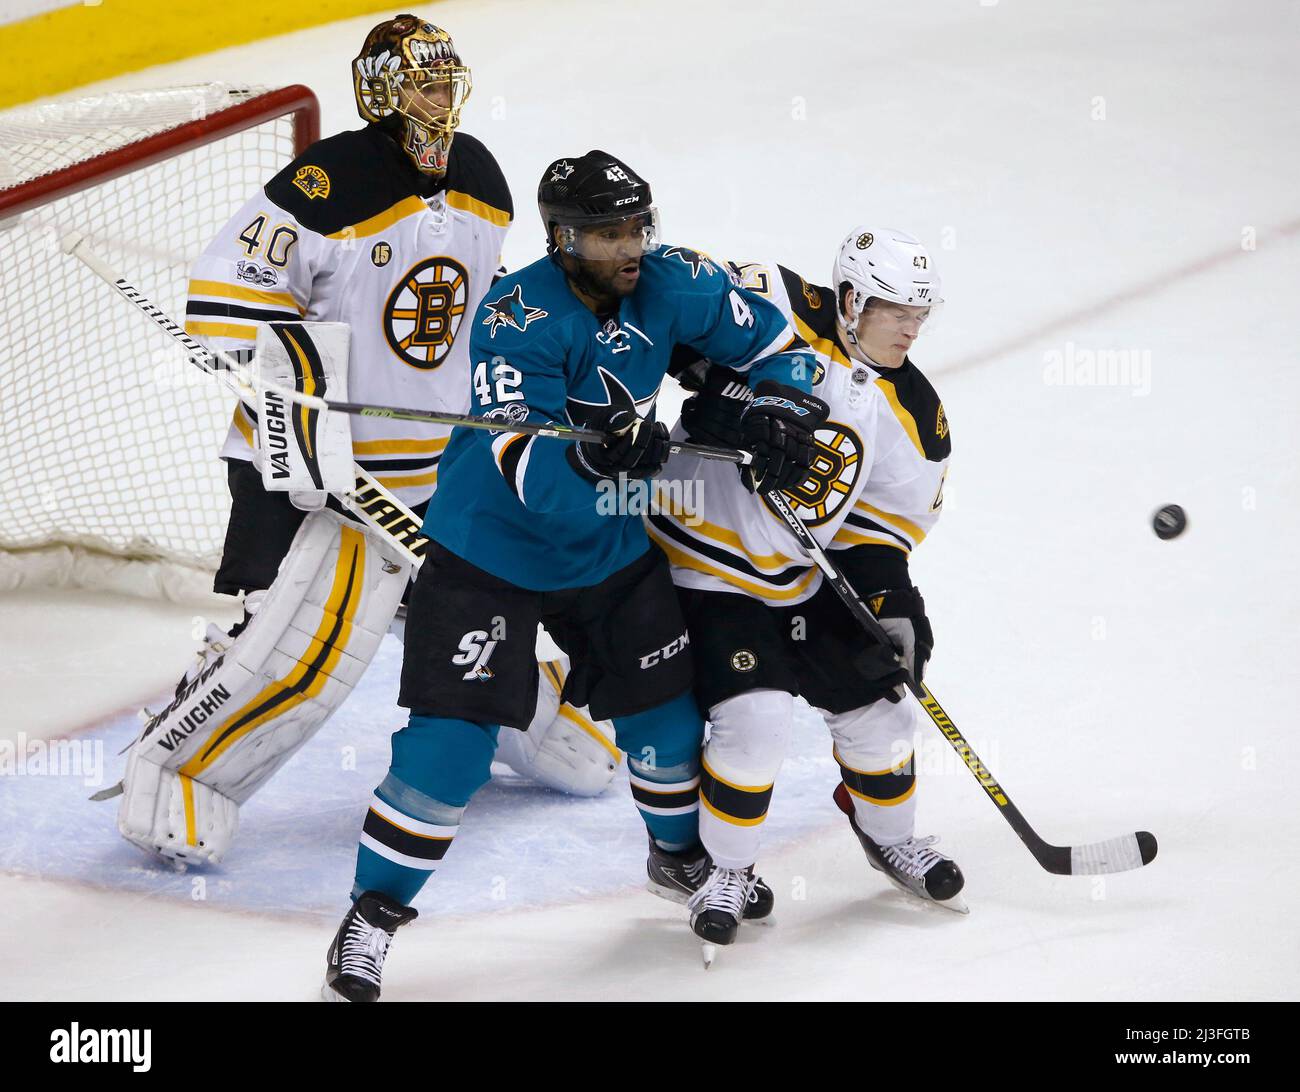 Joel Ward de San Jose Sharks (42) cherche le palet contre le Torey King de Boston Bruins (47) dans la deuxième période le dimanche 19 février 2017, au SAP Center à San Jose, Californie. (Photo de Nhat V. Meyer/Bay Area News Group/TNS/Sipa USA) Banque D'Images